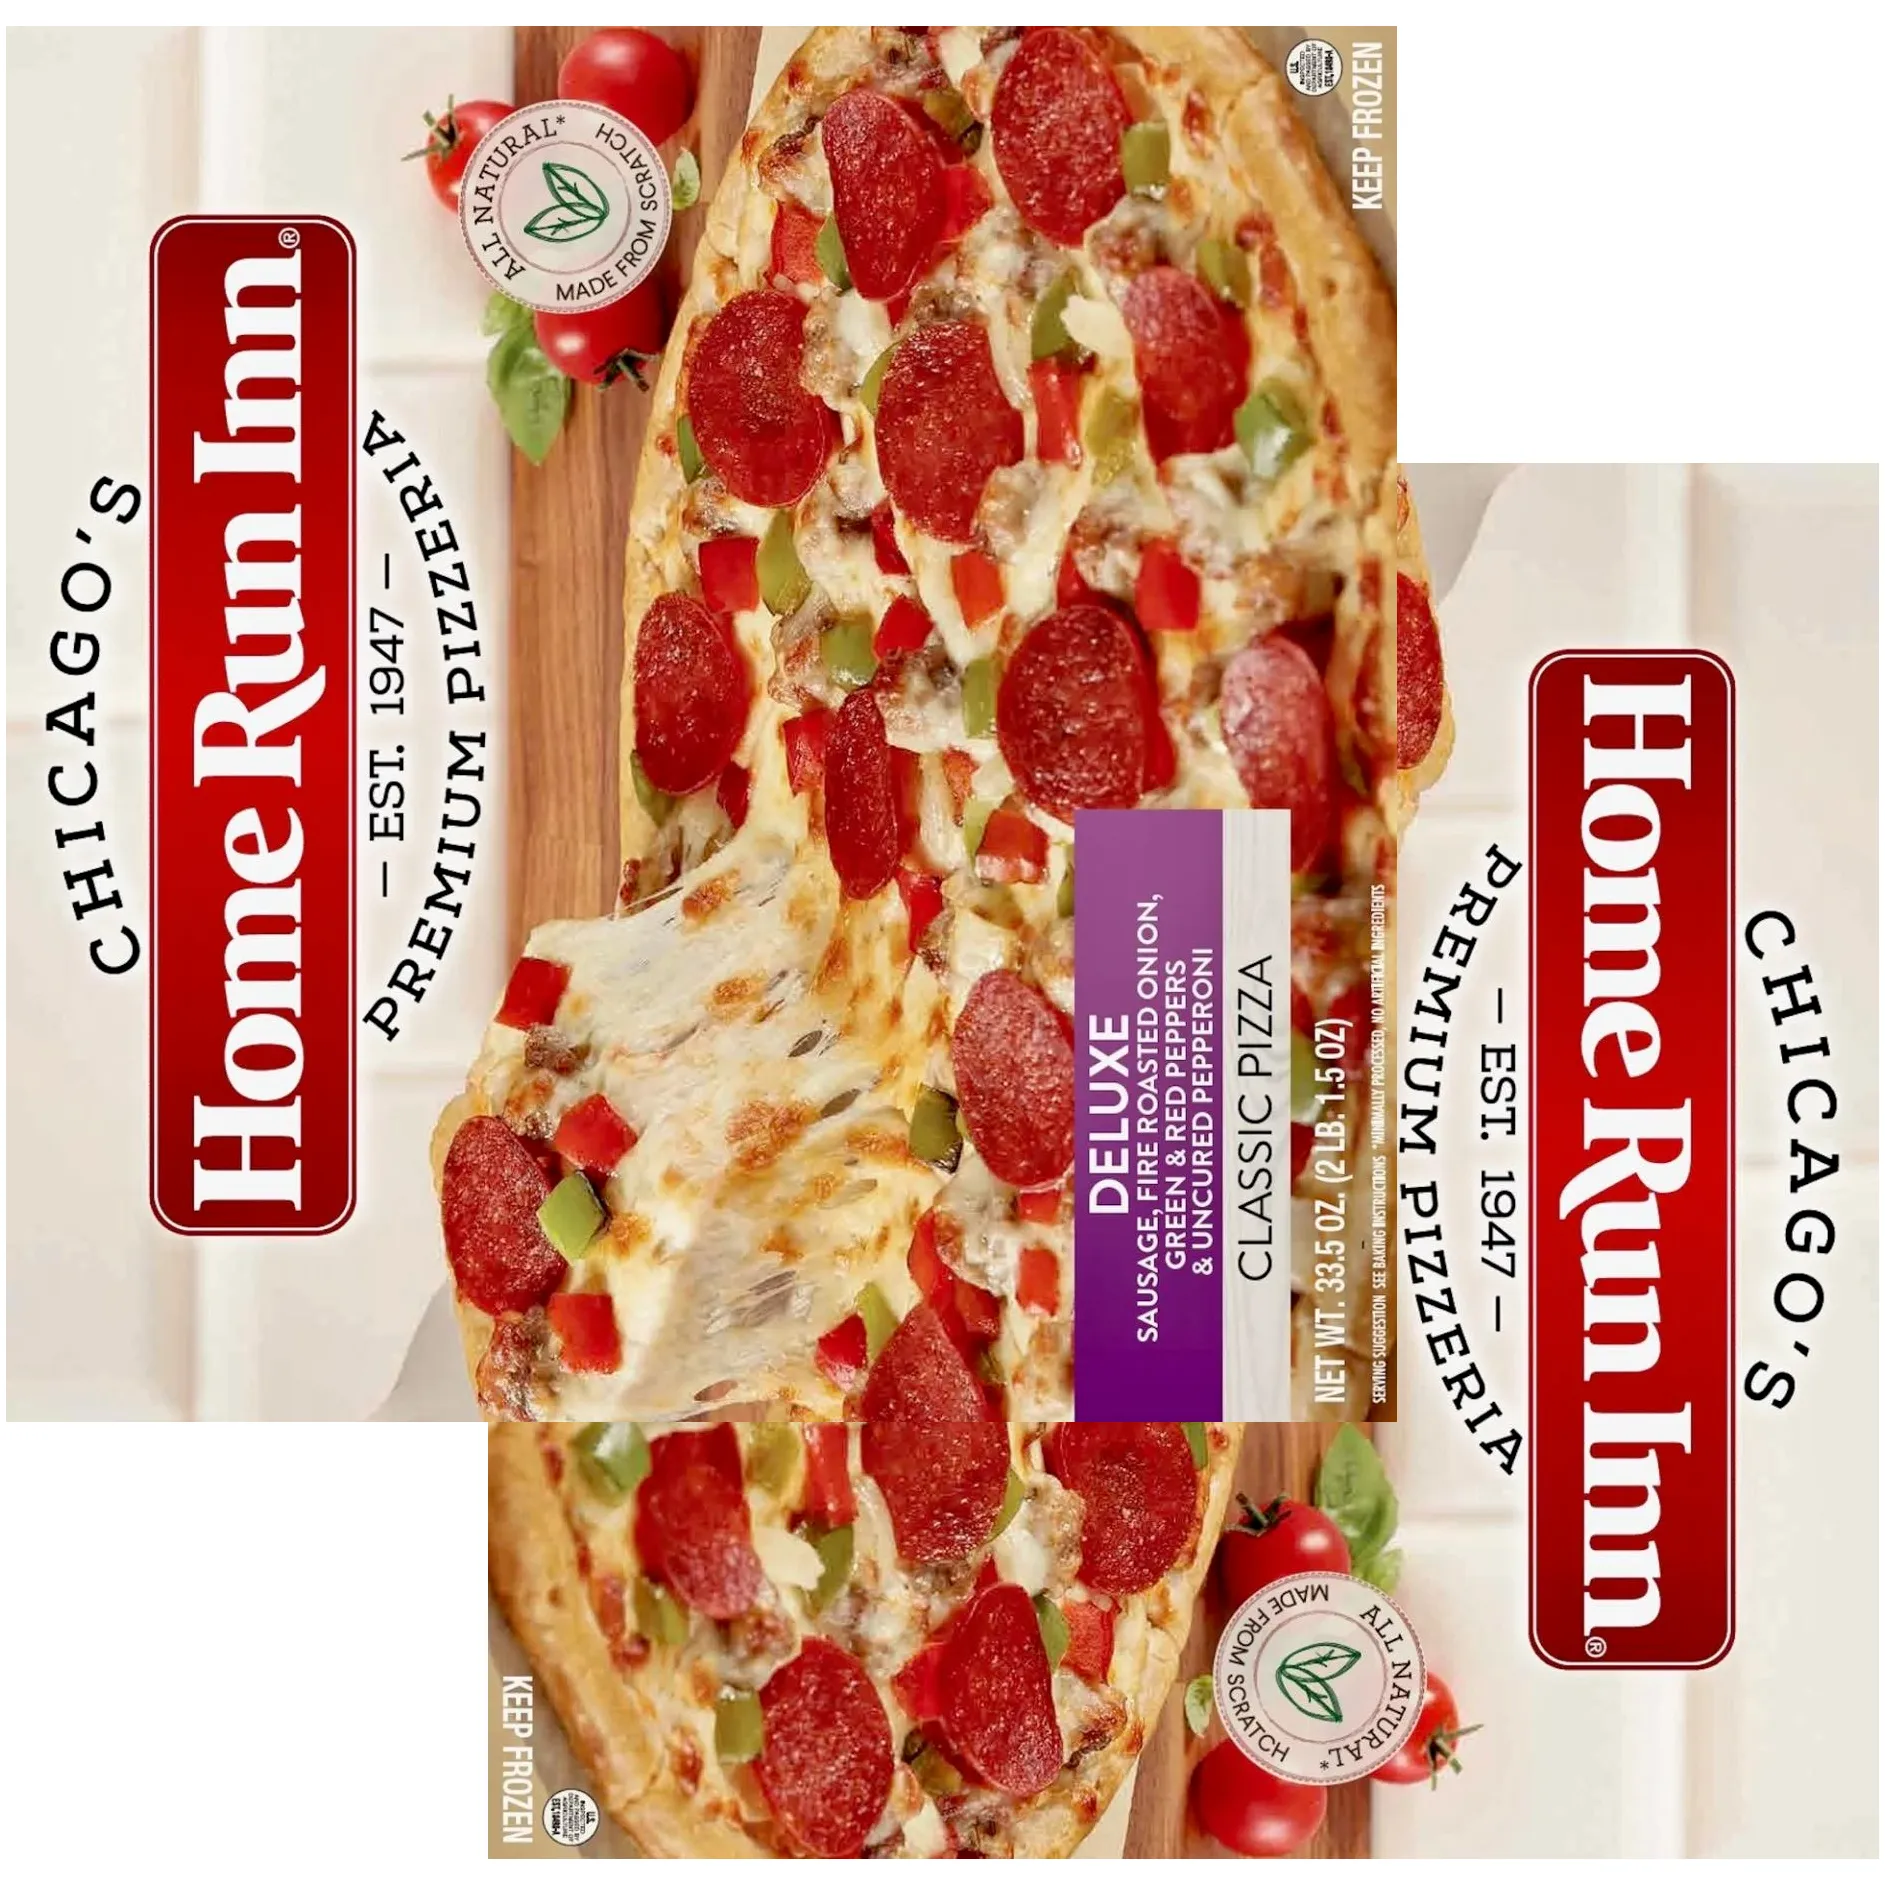 Free Home Run Inn Pizza